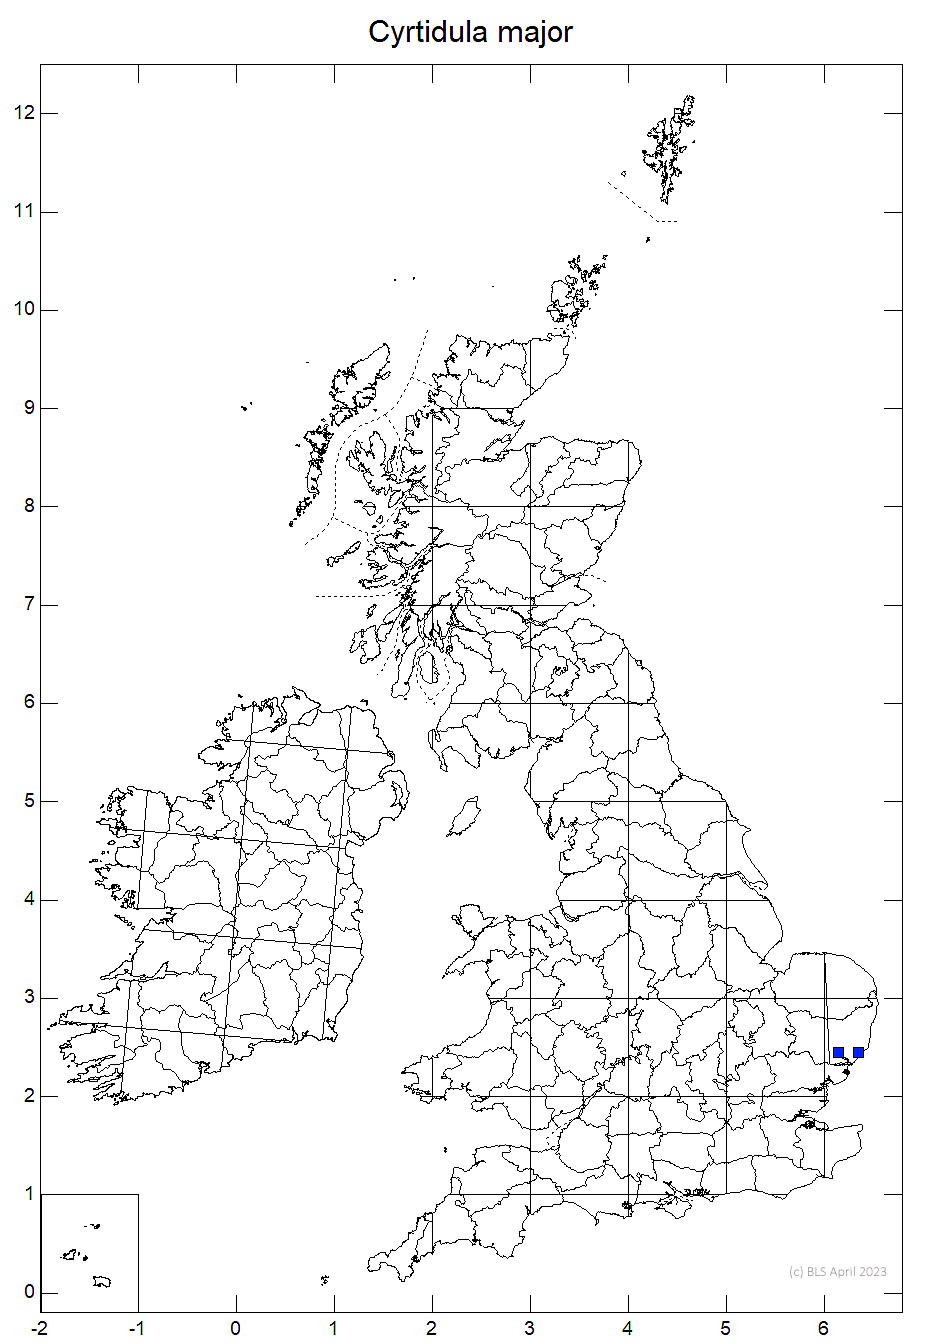 Cyrtidula major 10km sq distribution map